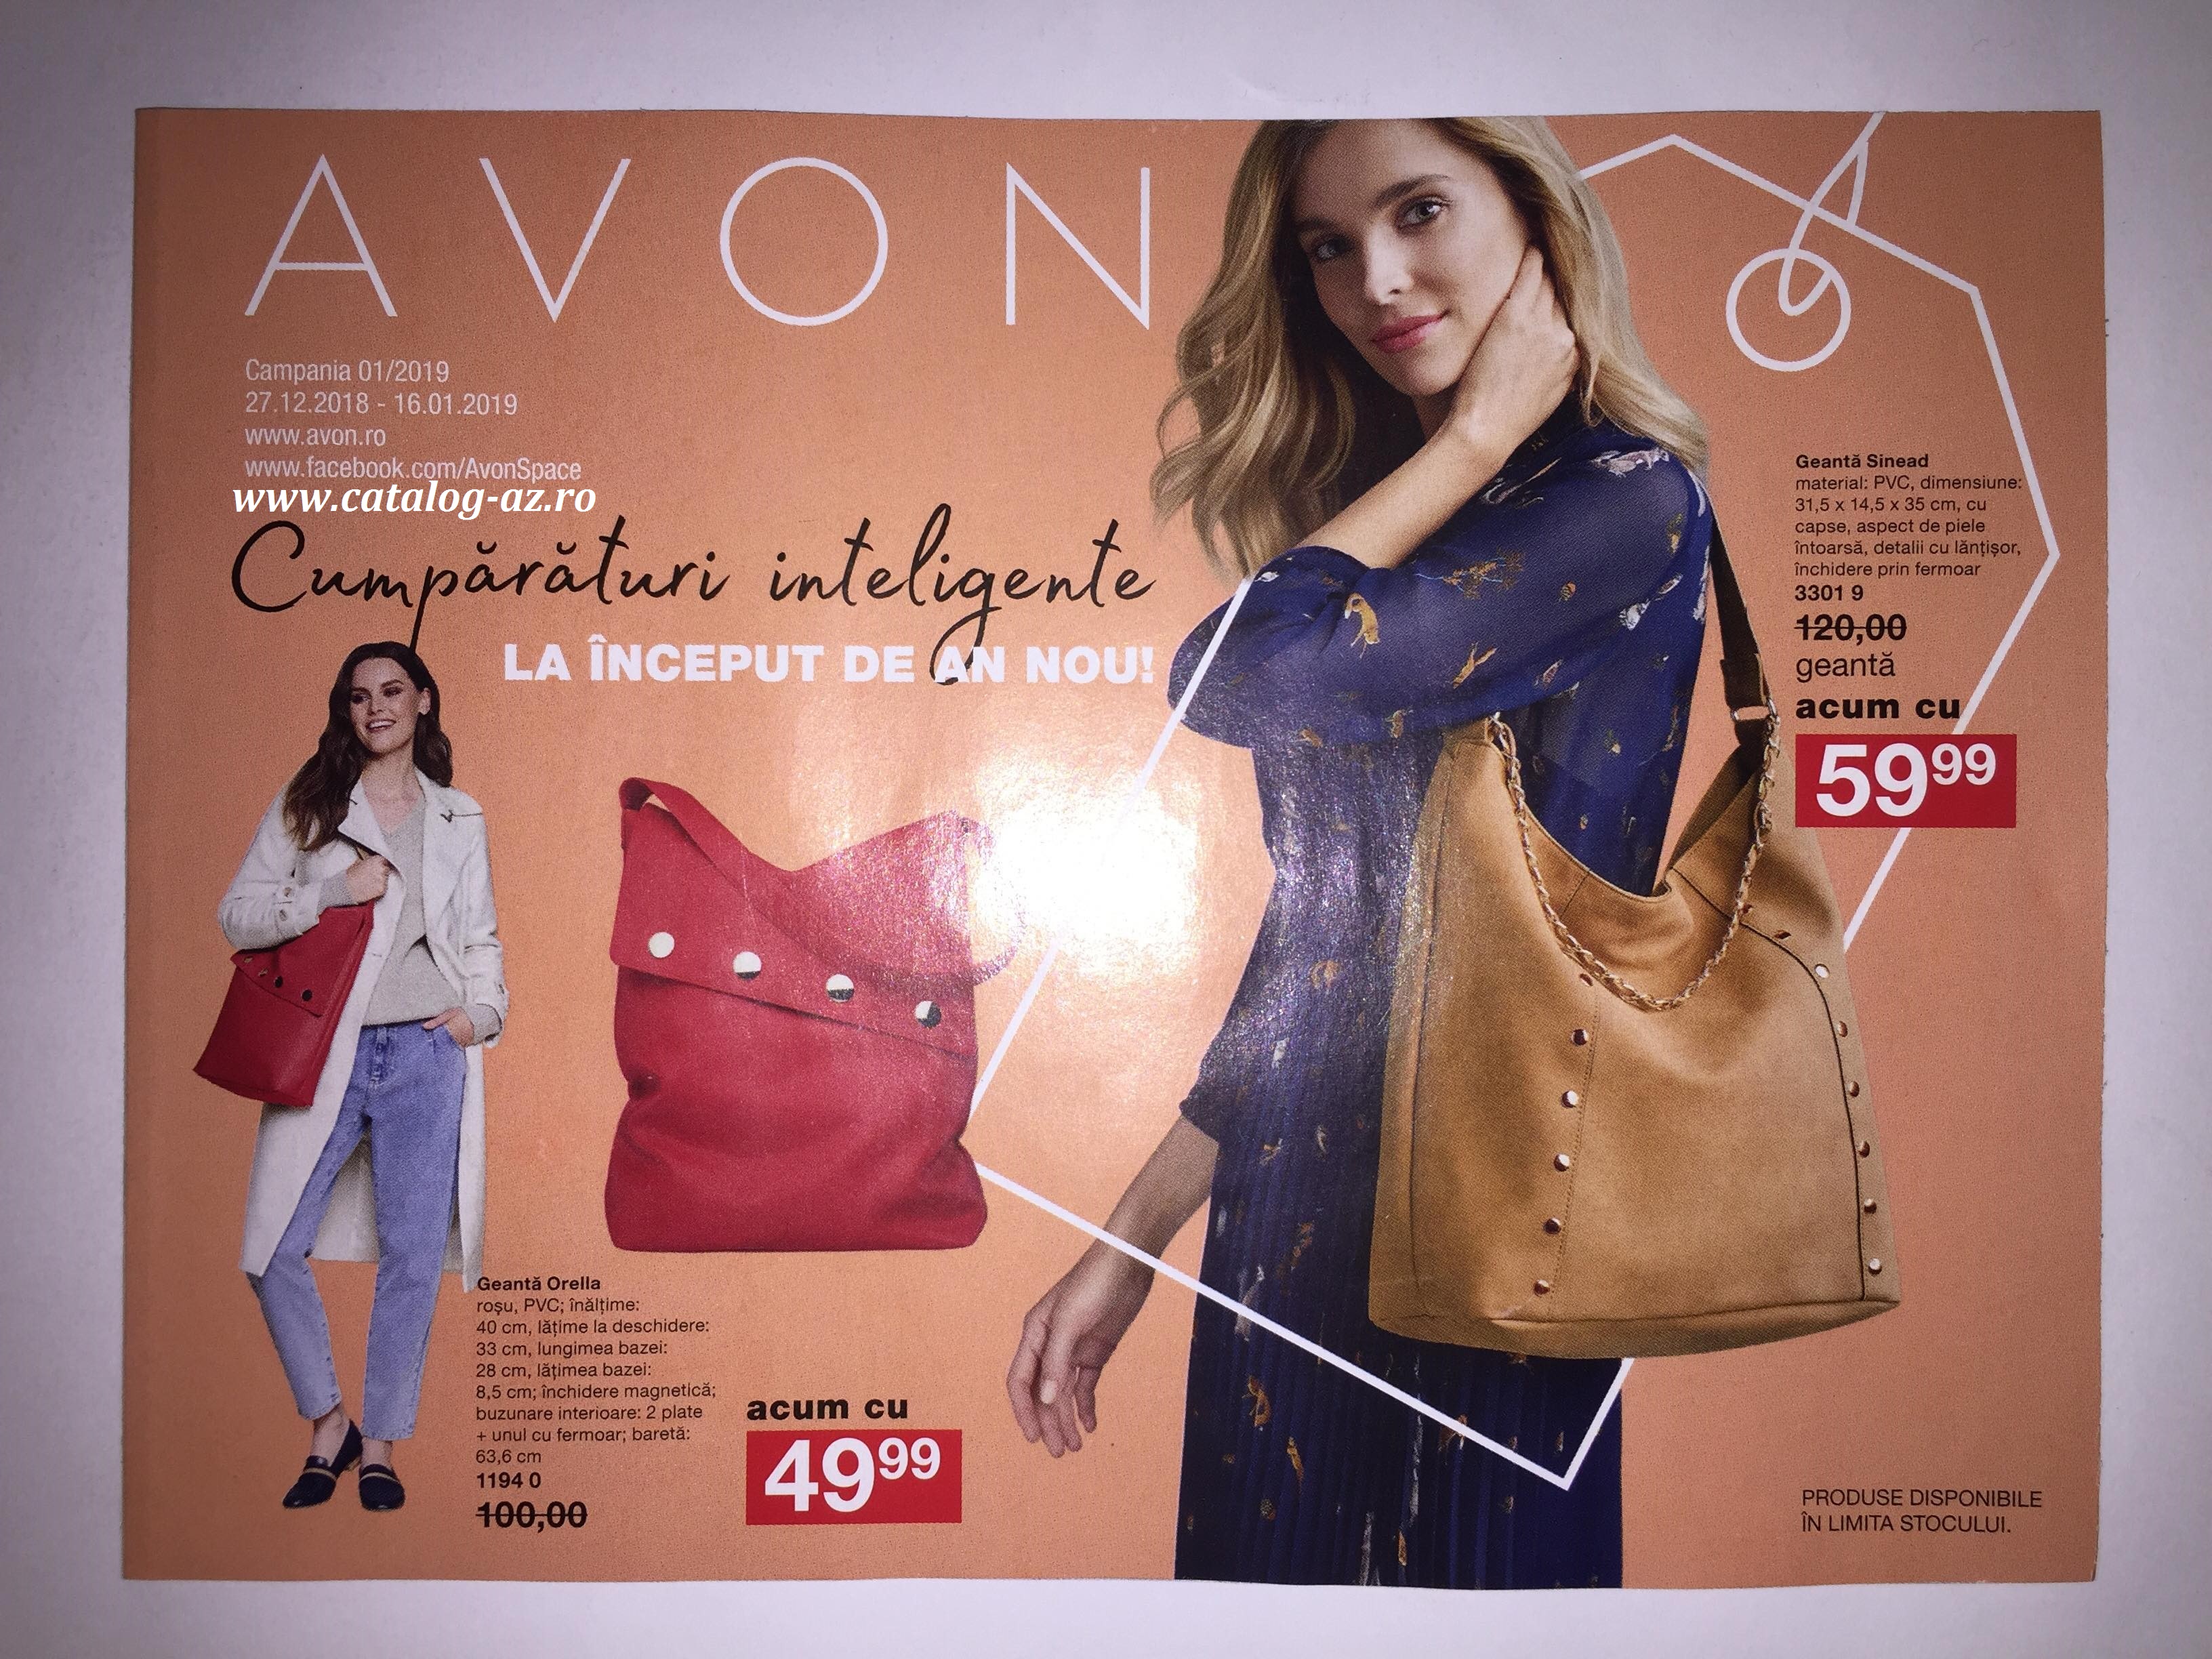 Catalog Avon Mini Brosura 1 2019 - Catalog AZ